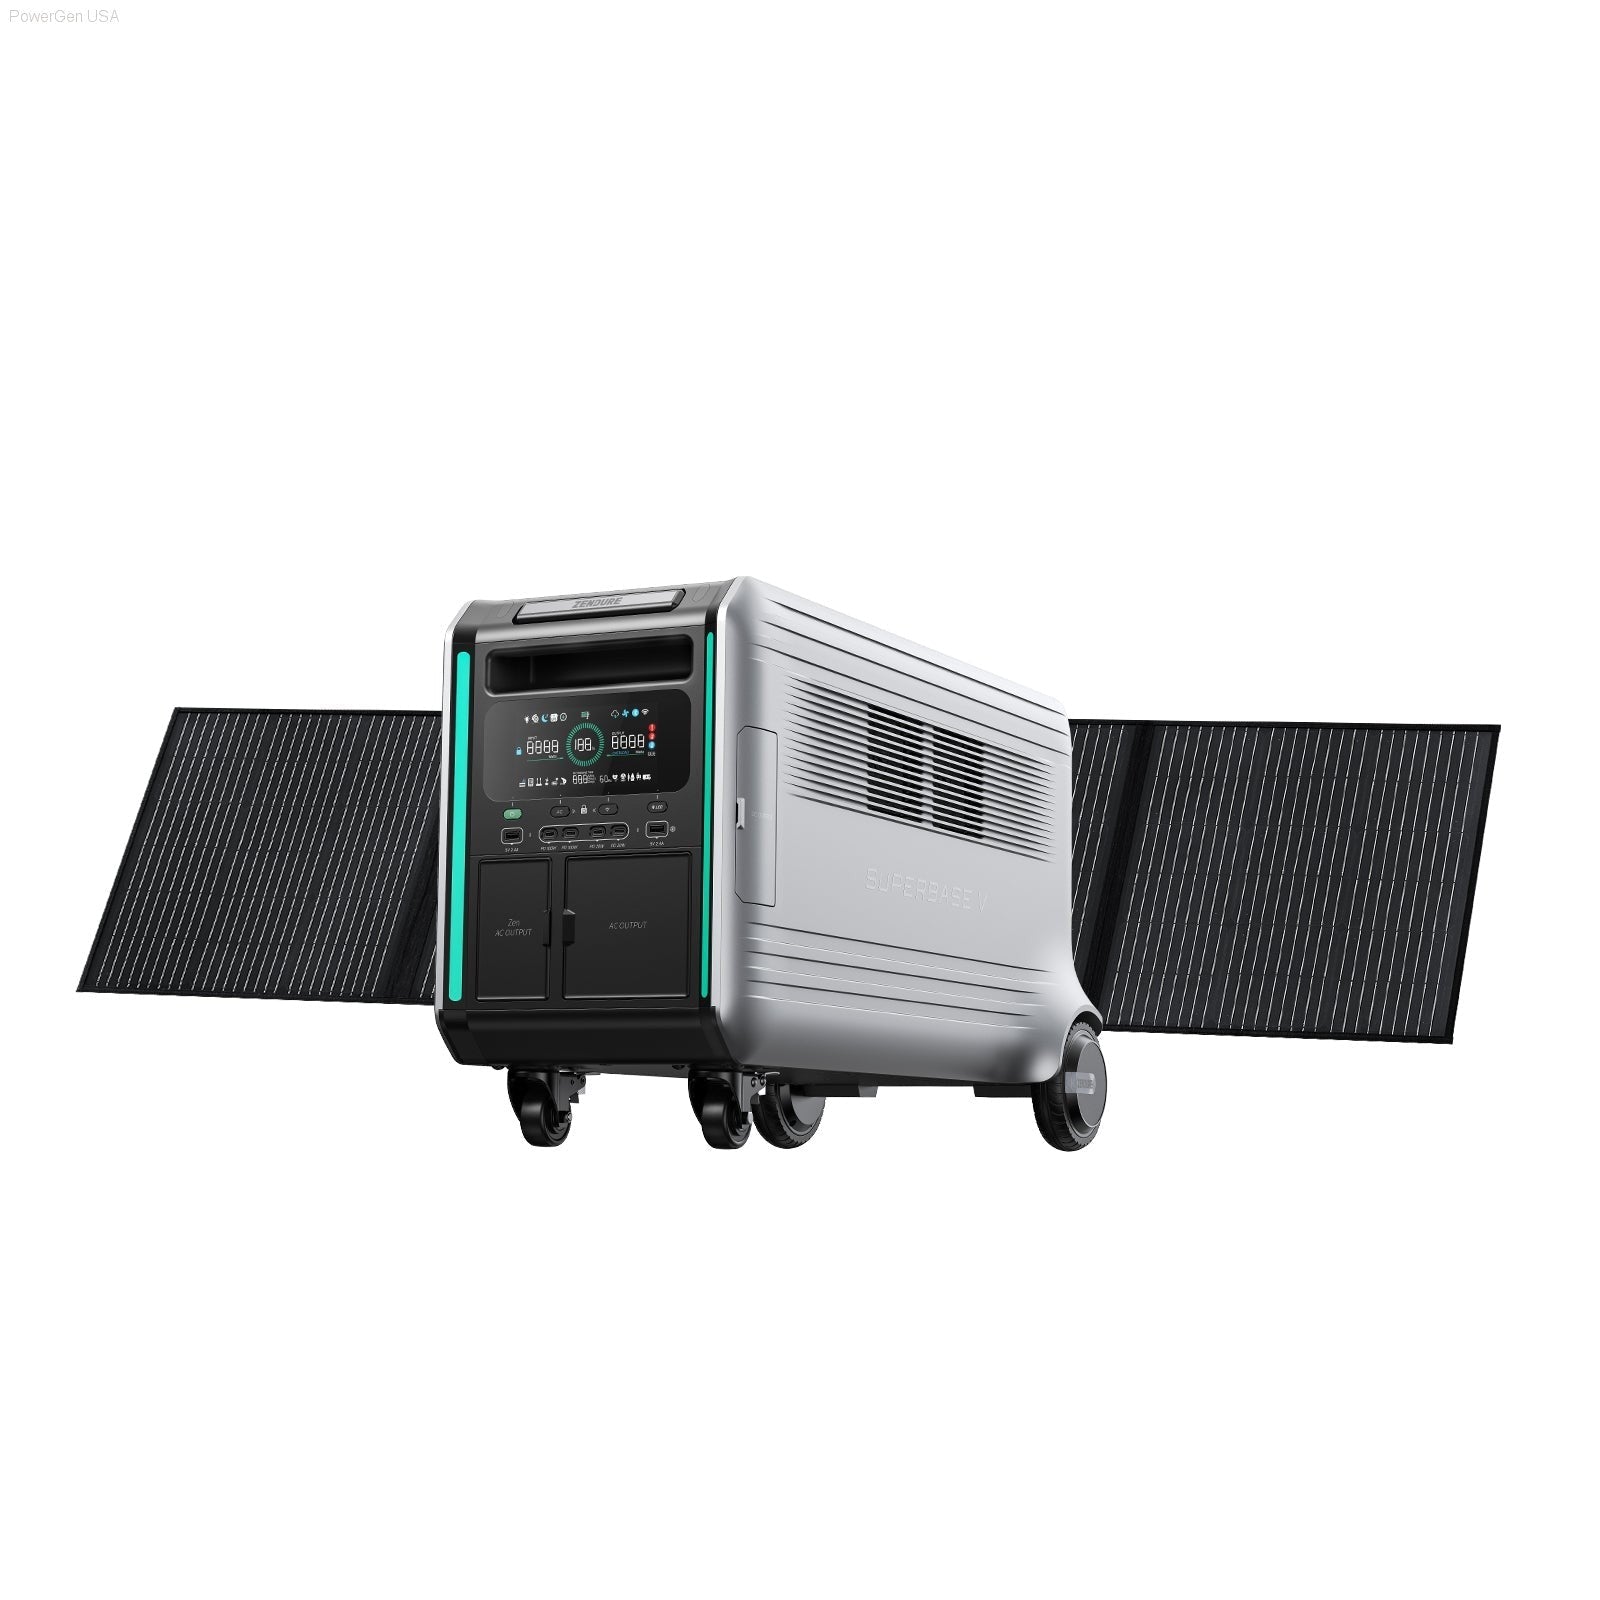 Solar & Battery Powered - Zendure SuperBase V4600 Power Station